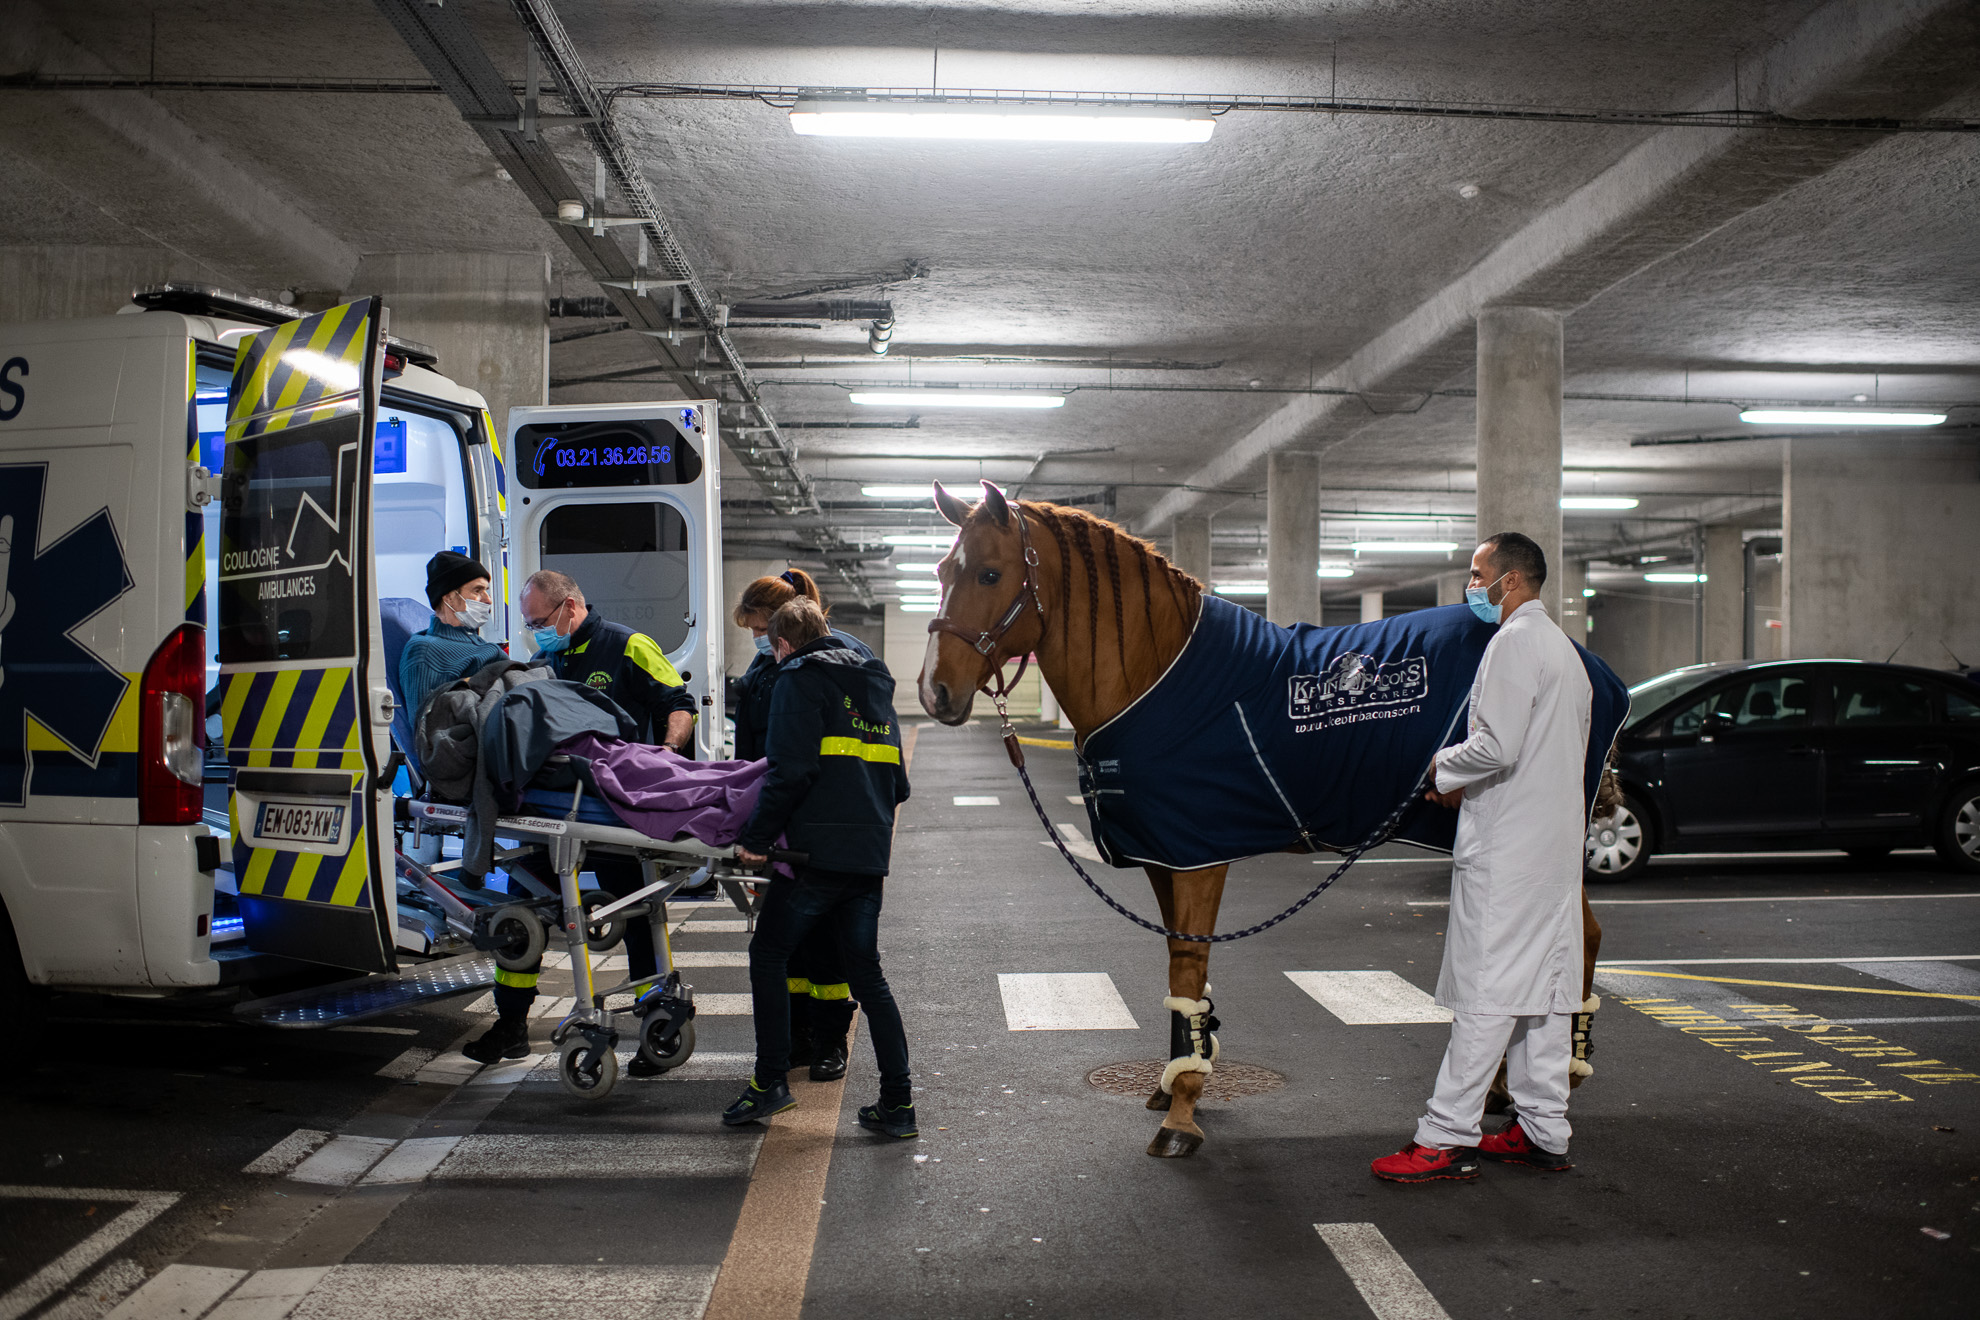 Francia-Calais, 12/01/2020. El aparcamiento del hospital de Calais. Peyo y Hassen acompañan a Roger, de 64 años, a la ambulancia que le llevará de vuelta a casa. "El doctor Peyo y Hassen no son personas, son ángeles", dice el hijo de un paciente.